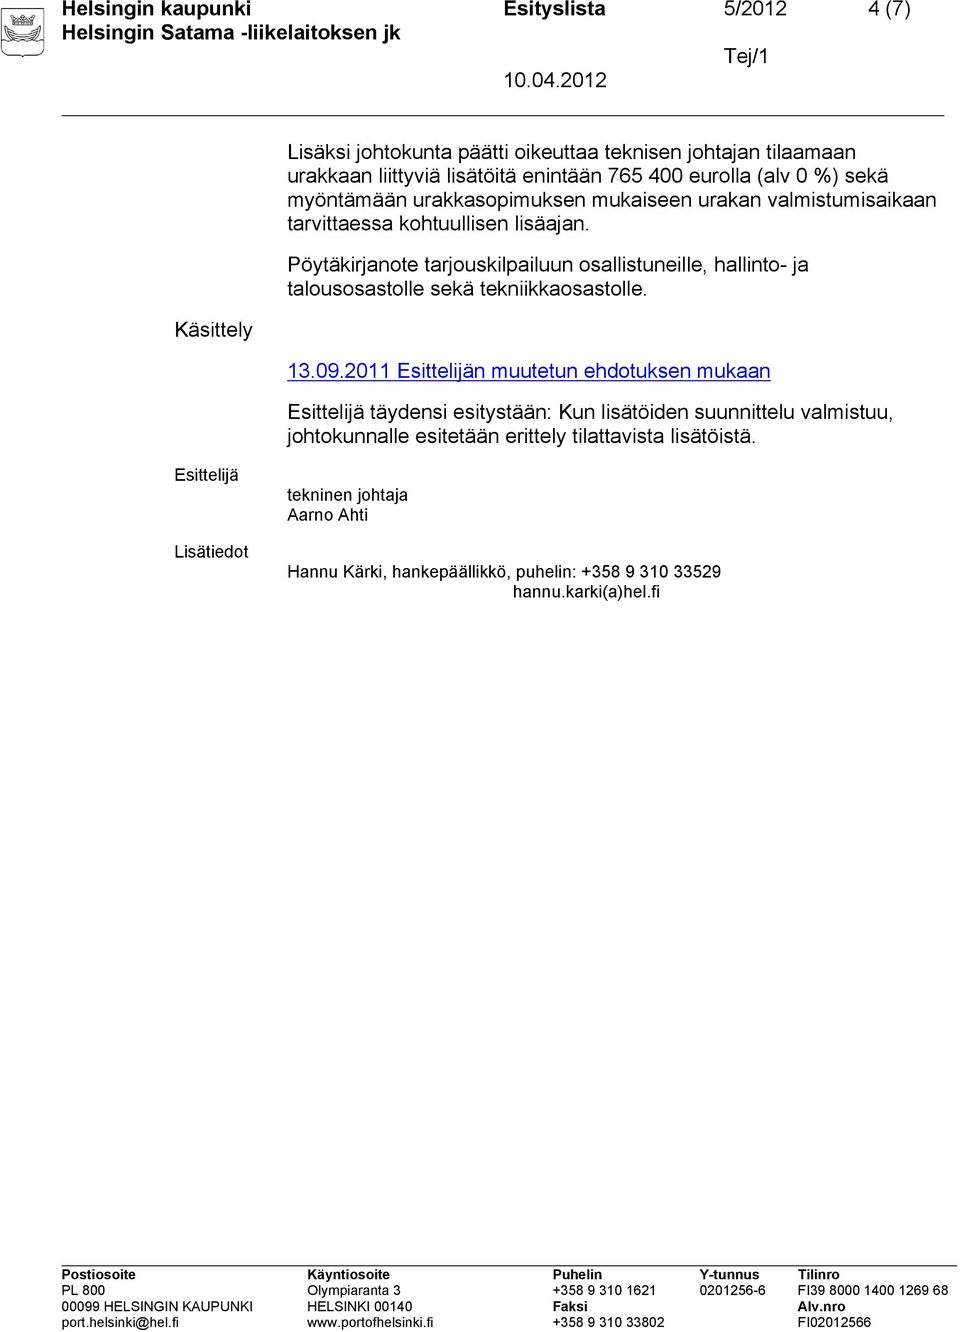 Pöytäkirjanote tarjouskilpailuun osallistuneille, hallinto- ja talousosastolle sekä tekniikkaosastolle. 13.09.